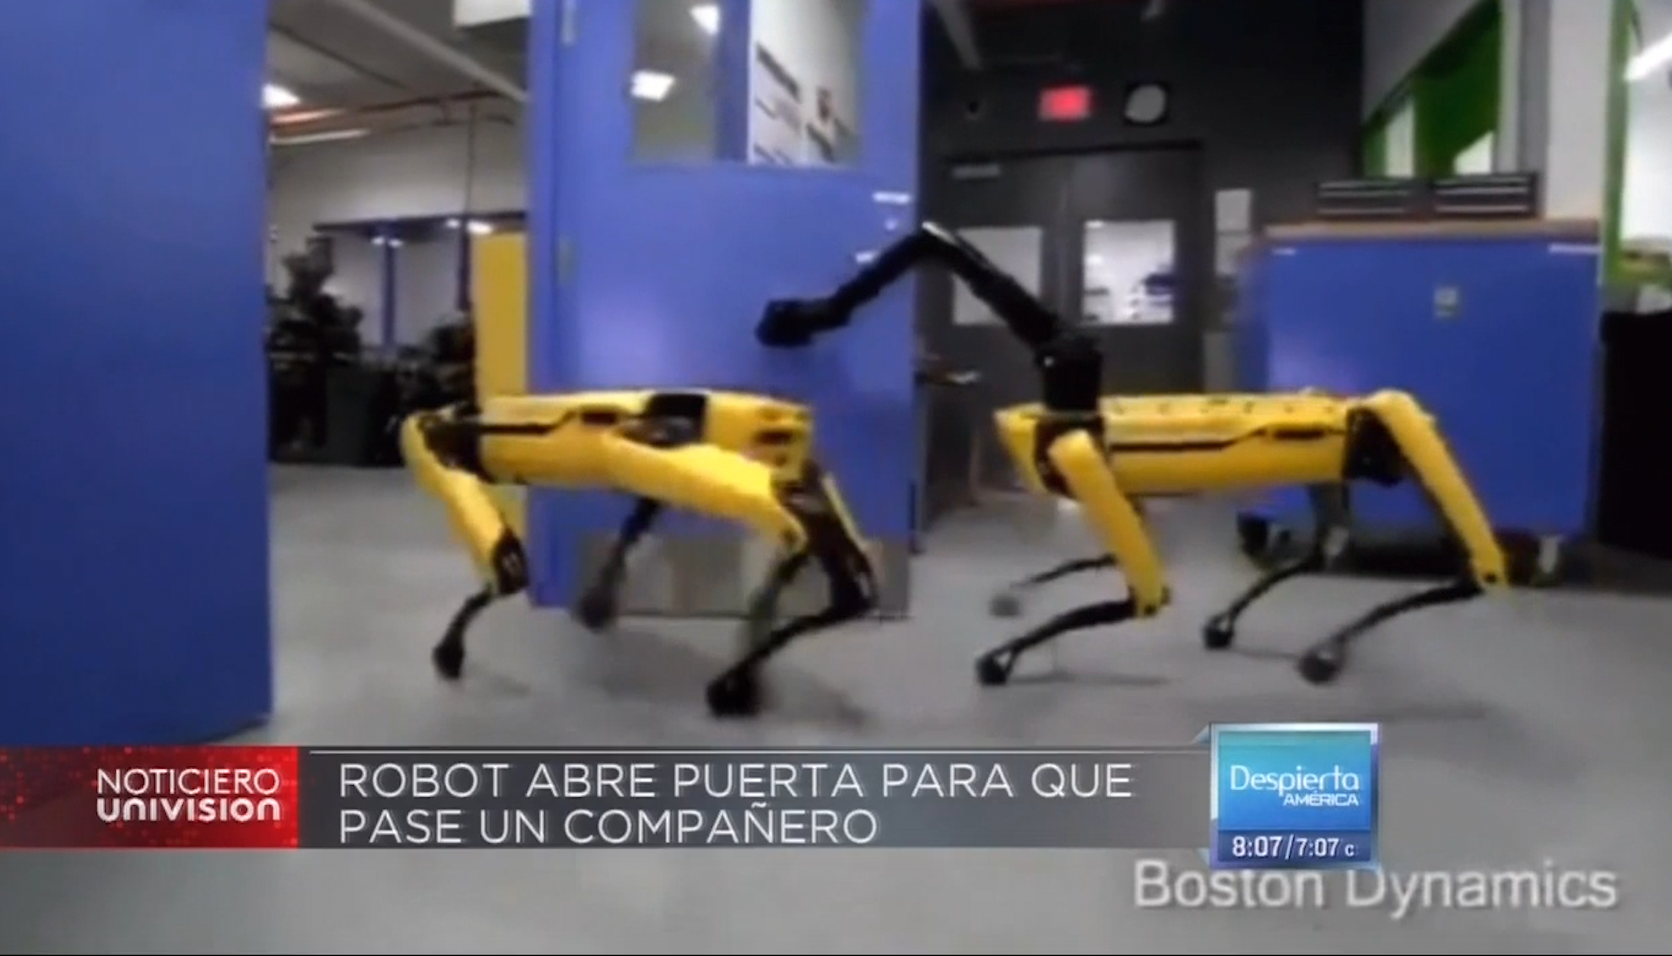 Tecnología: Robot “Caballeroso” Le Abre La Puerta A Su Compañero